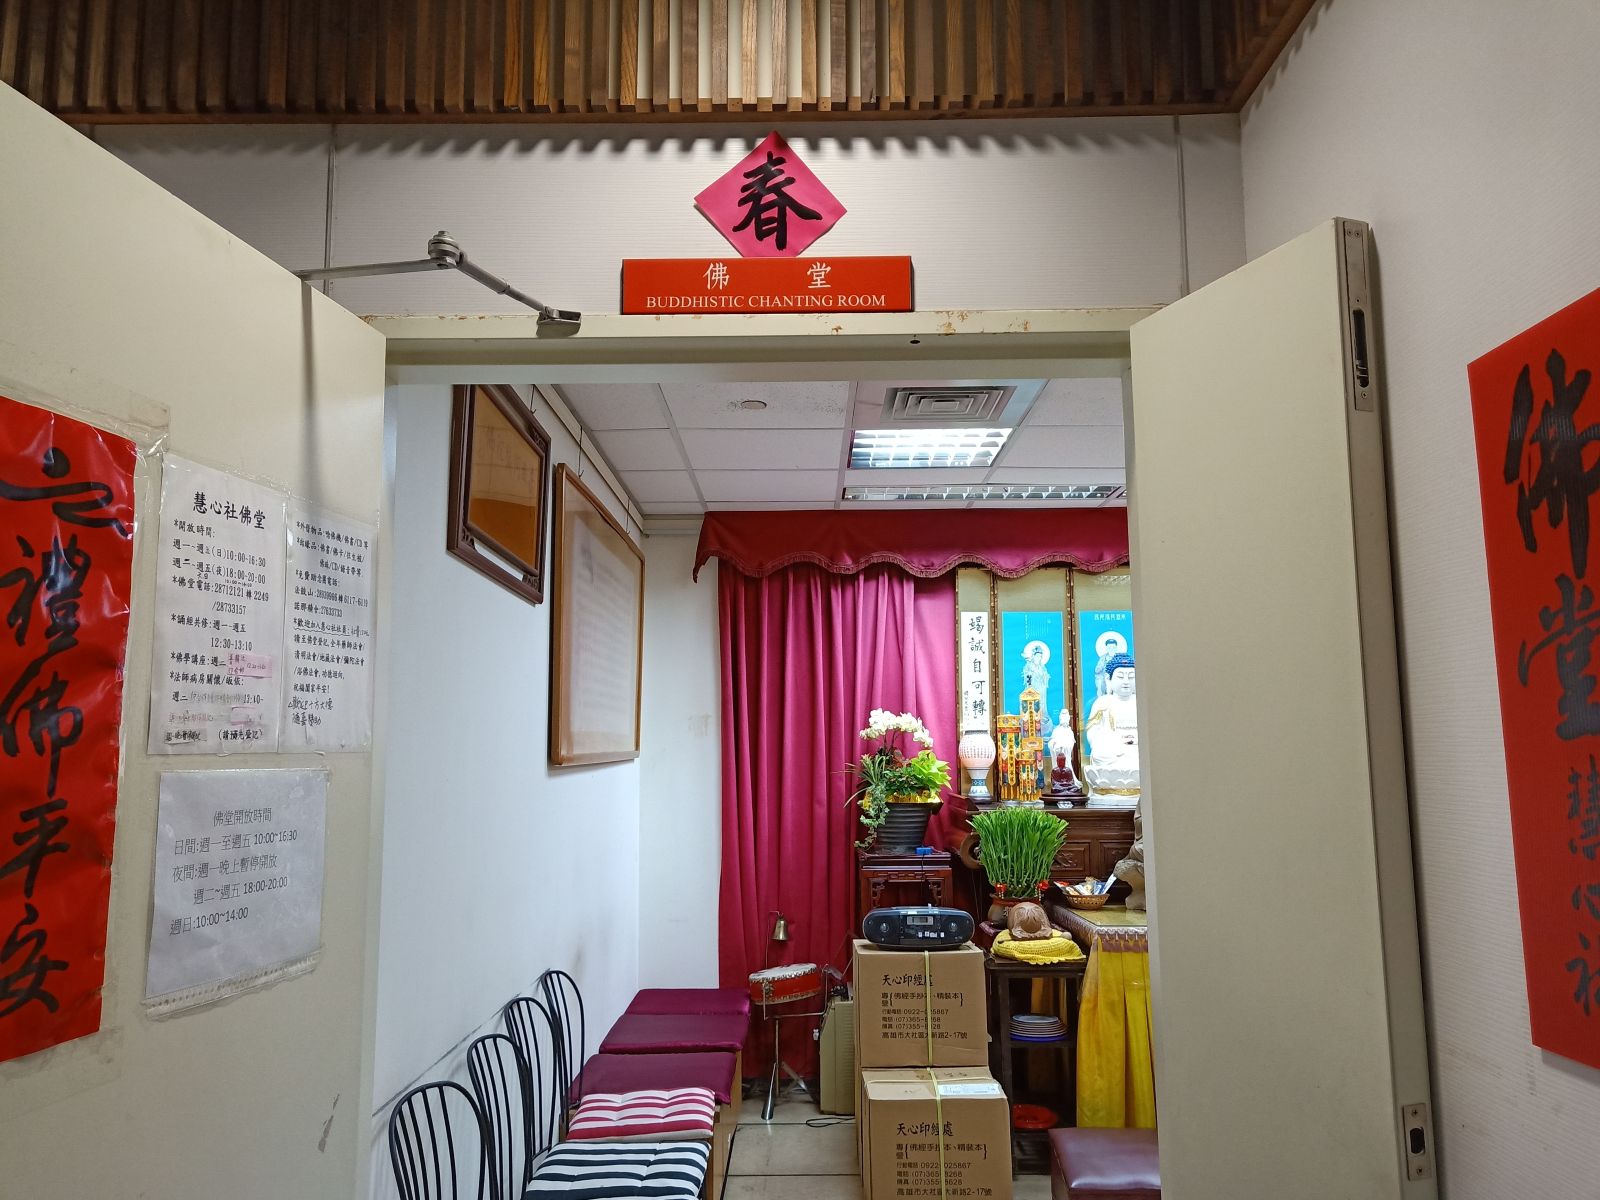 宗教團體：位於通往國立臺北健康大學之地下連通道